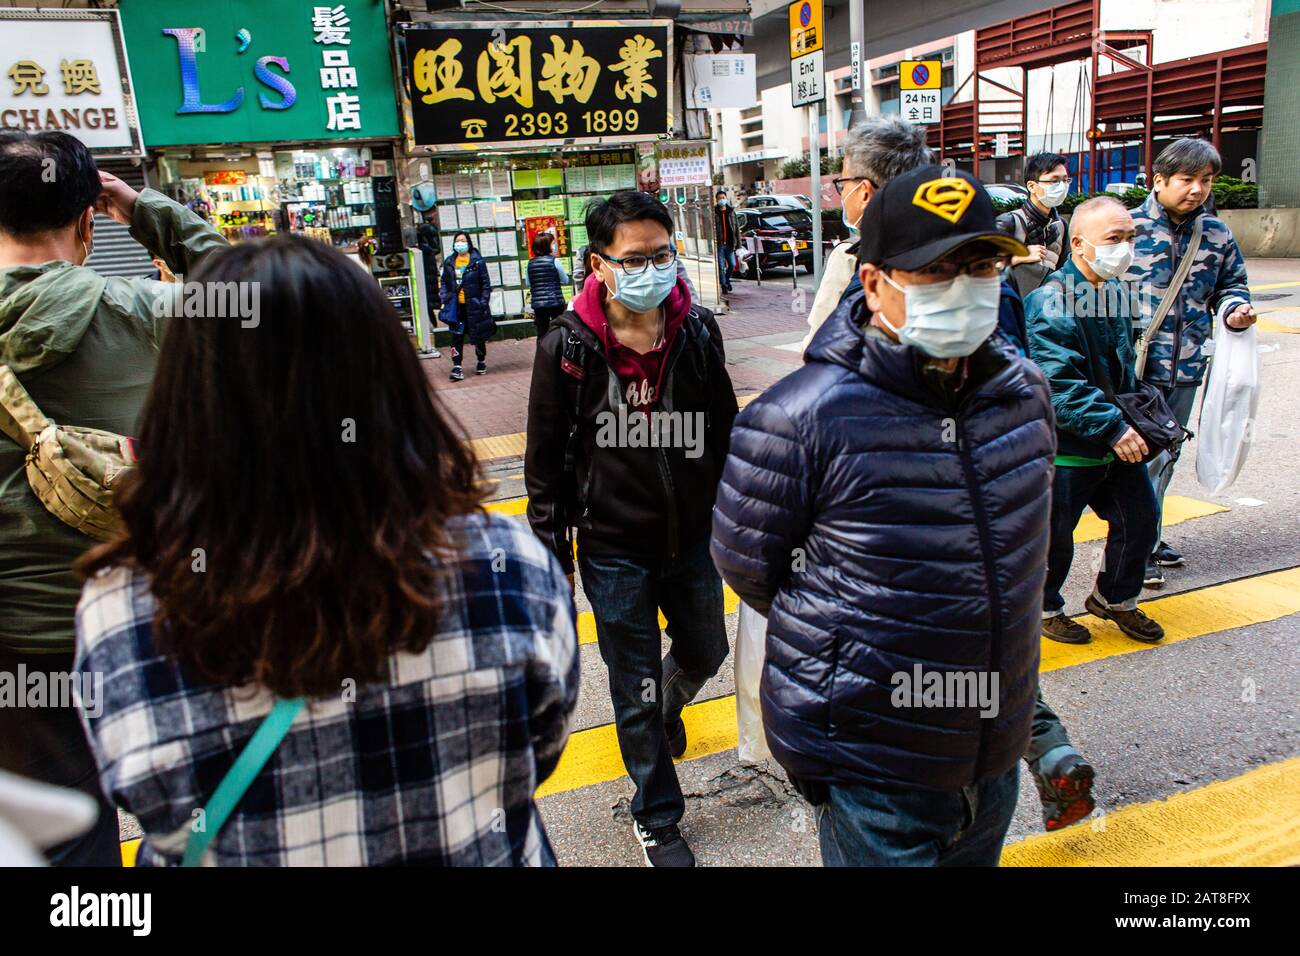 29 gennaio 2020, Hong Kong, Cina: Persone che indossano maschere facciali come precauzione per lo scoppio di Coronavirus a Hong Kong.. Alla luce di un focolaio di coronavirus a Hong Kong i cittadini indossavano maschere facciali per timore di contrarre l'influenza. A causa del panico diffuso e delle scarse forniture, i cittadini sono stati messi in coda per acquistare maschere facciali e igienizzatori per le mani. (Credit Image: © Willie Siau/SOPA Images via ZUMA Wire) Foto Stock